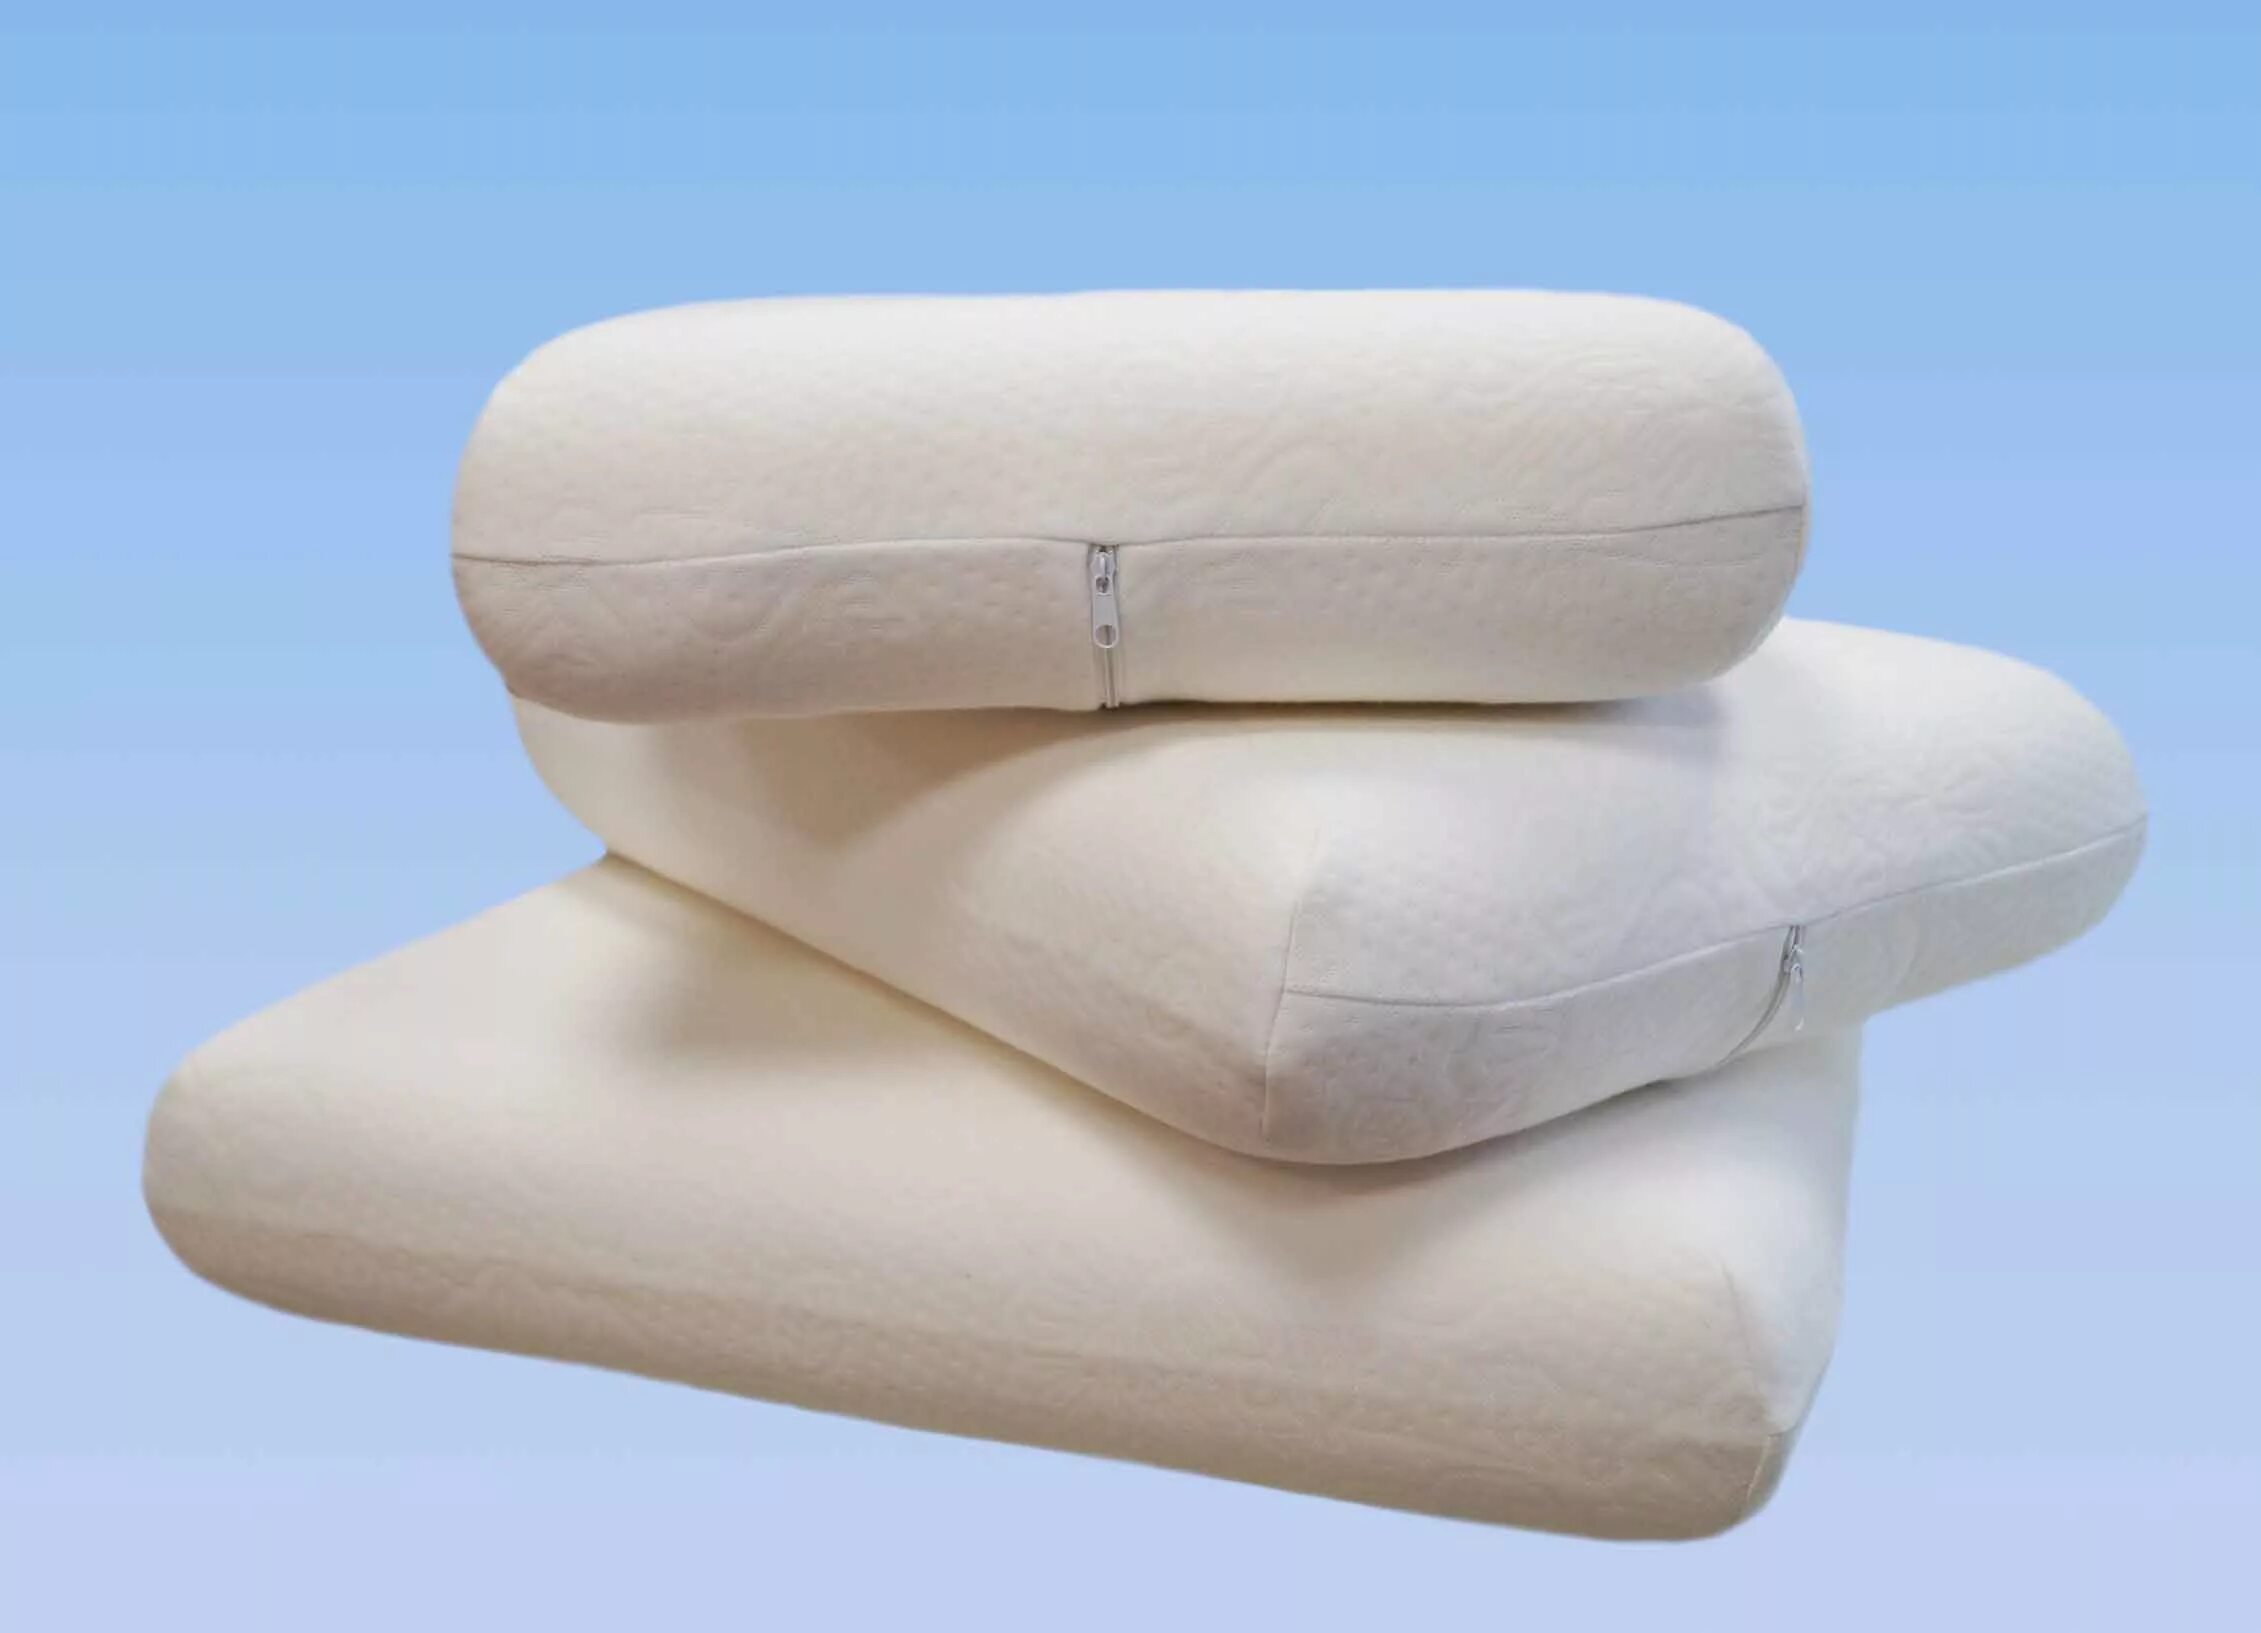 Анатомическая подушка релакс. Ортопедическая подушка. Ортопедическая подушка для сна. Ортопедическая подушка с памятью формы. Купить подушку от производителя